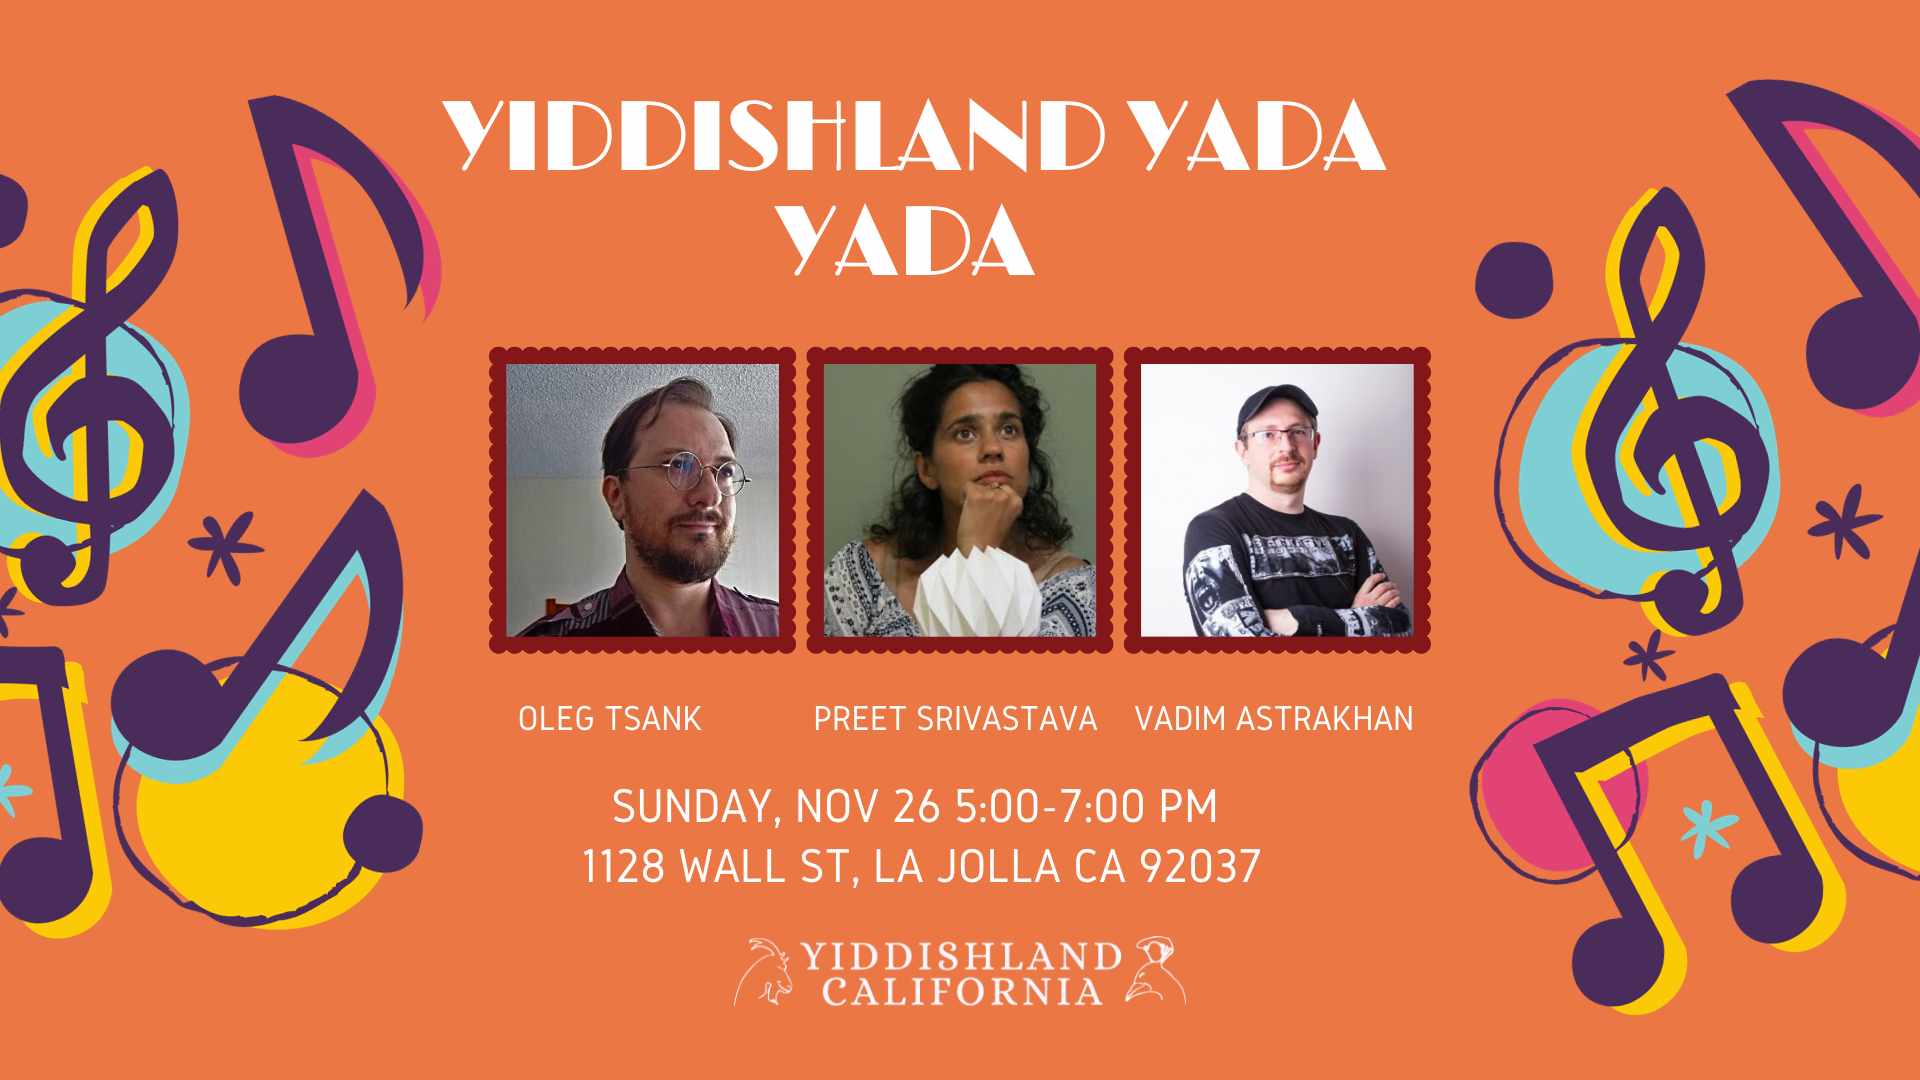 Ad for Yiddishland's “Yiddishland Yada Yada” an evening of art exploration, on Friday, November 17, 7:00 to 9:00 p.m. PT at Yiddishland California and on Zoom